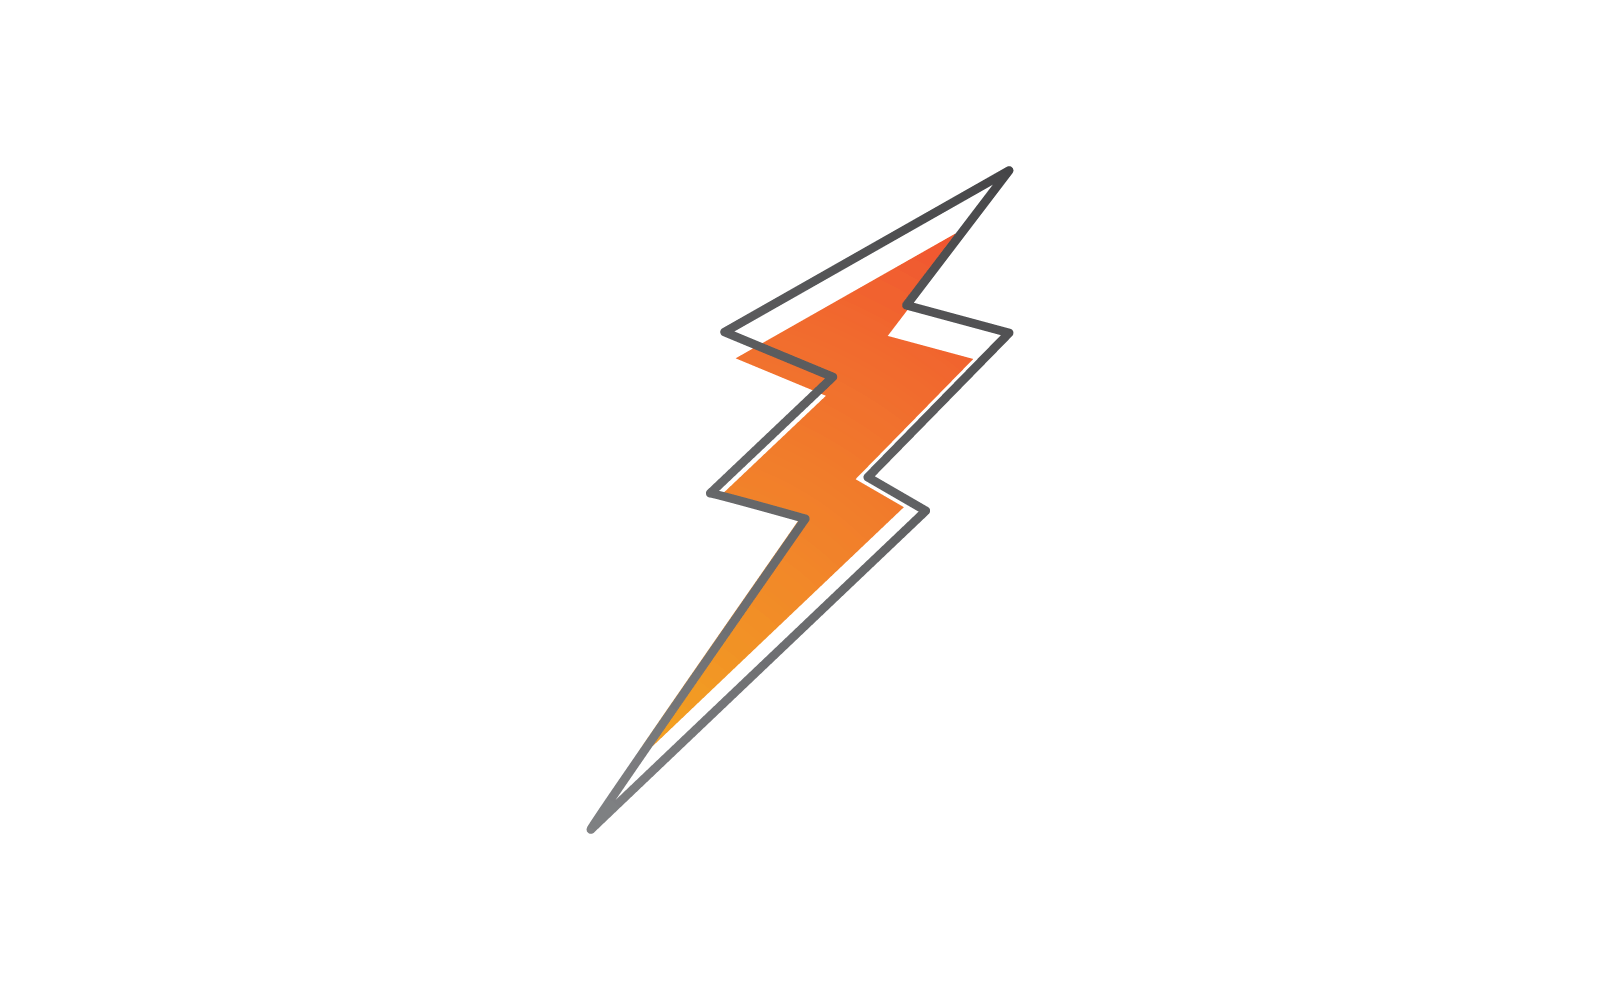 Power lightning power energy logo illustration vector